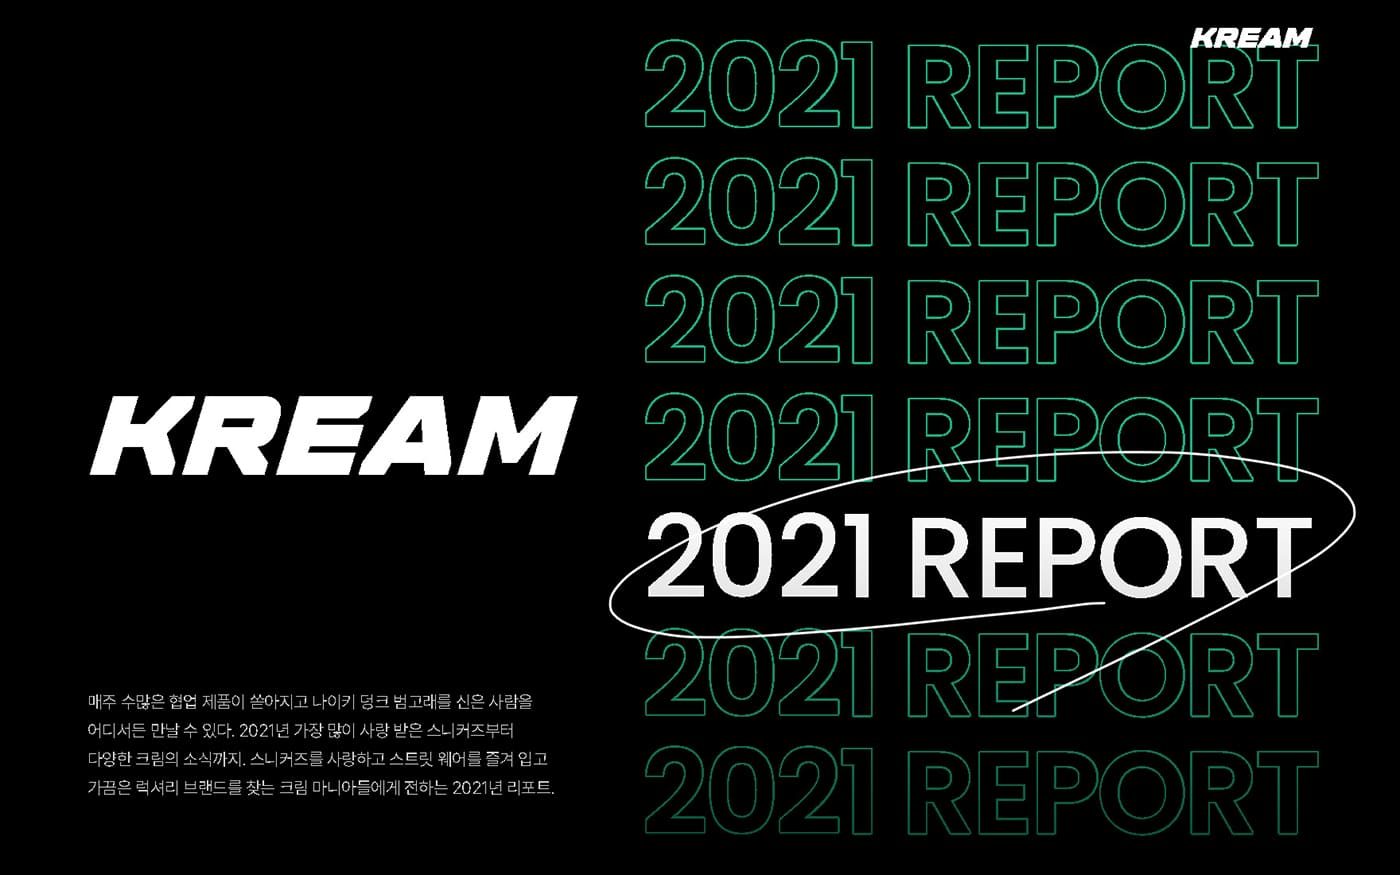 크림 2021 리포트 돌아보기(KREAM Report 2021)